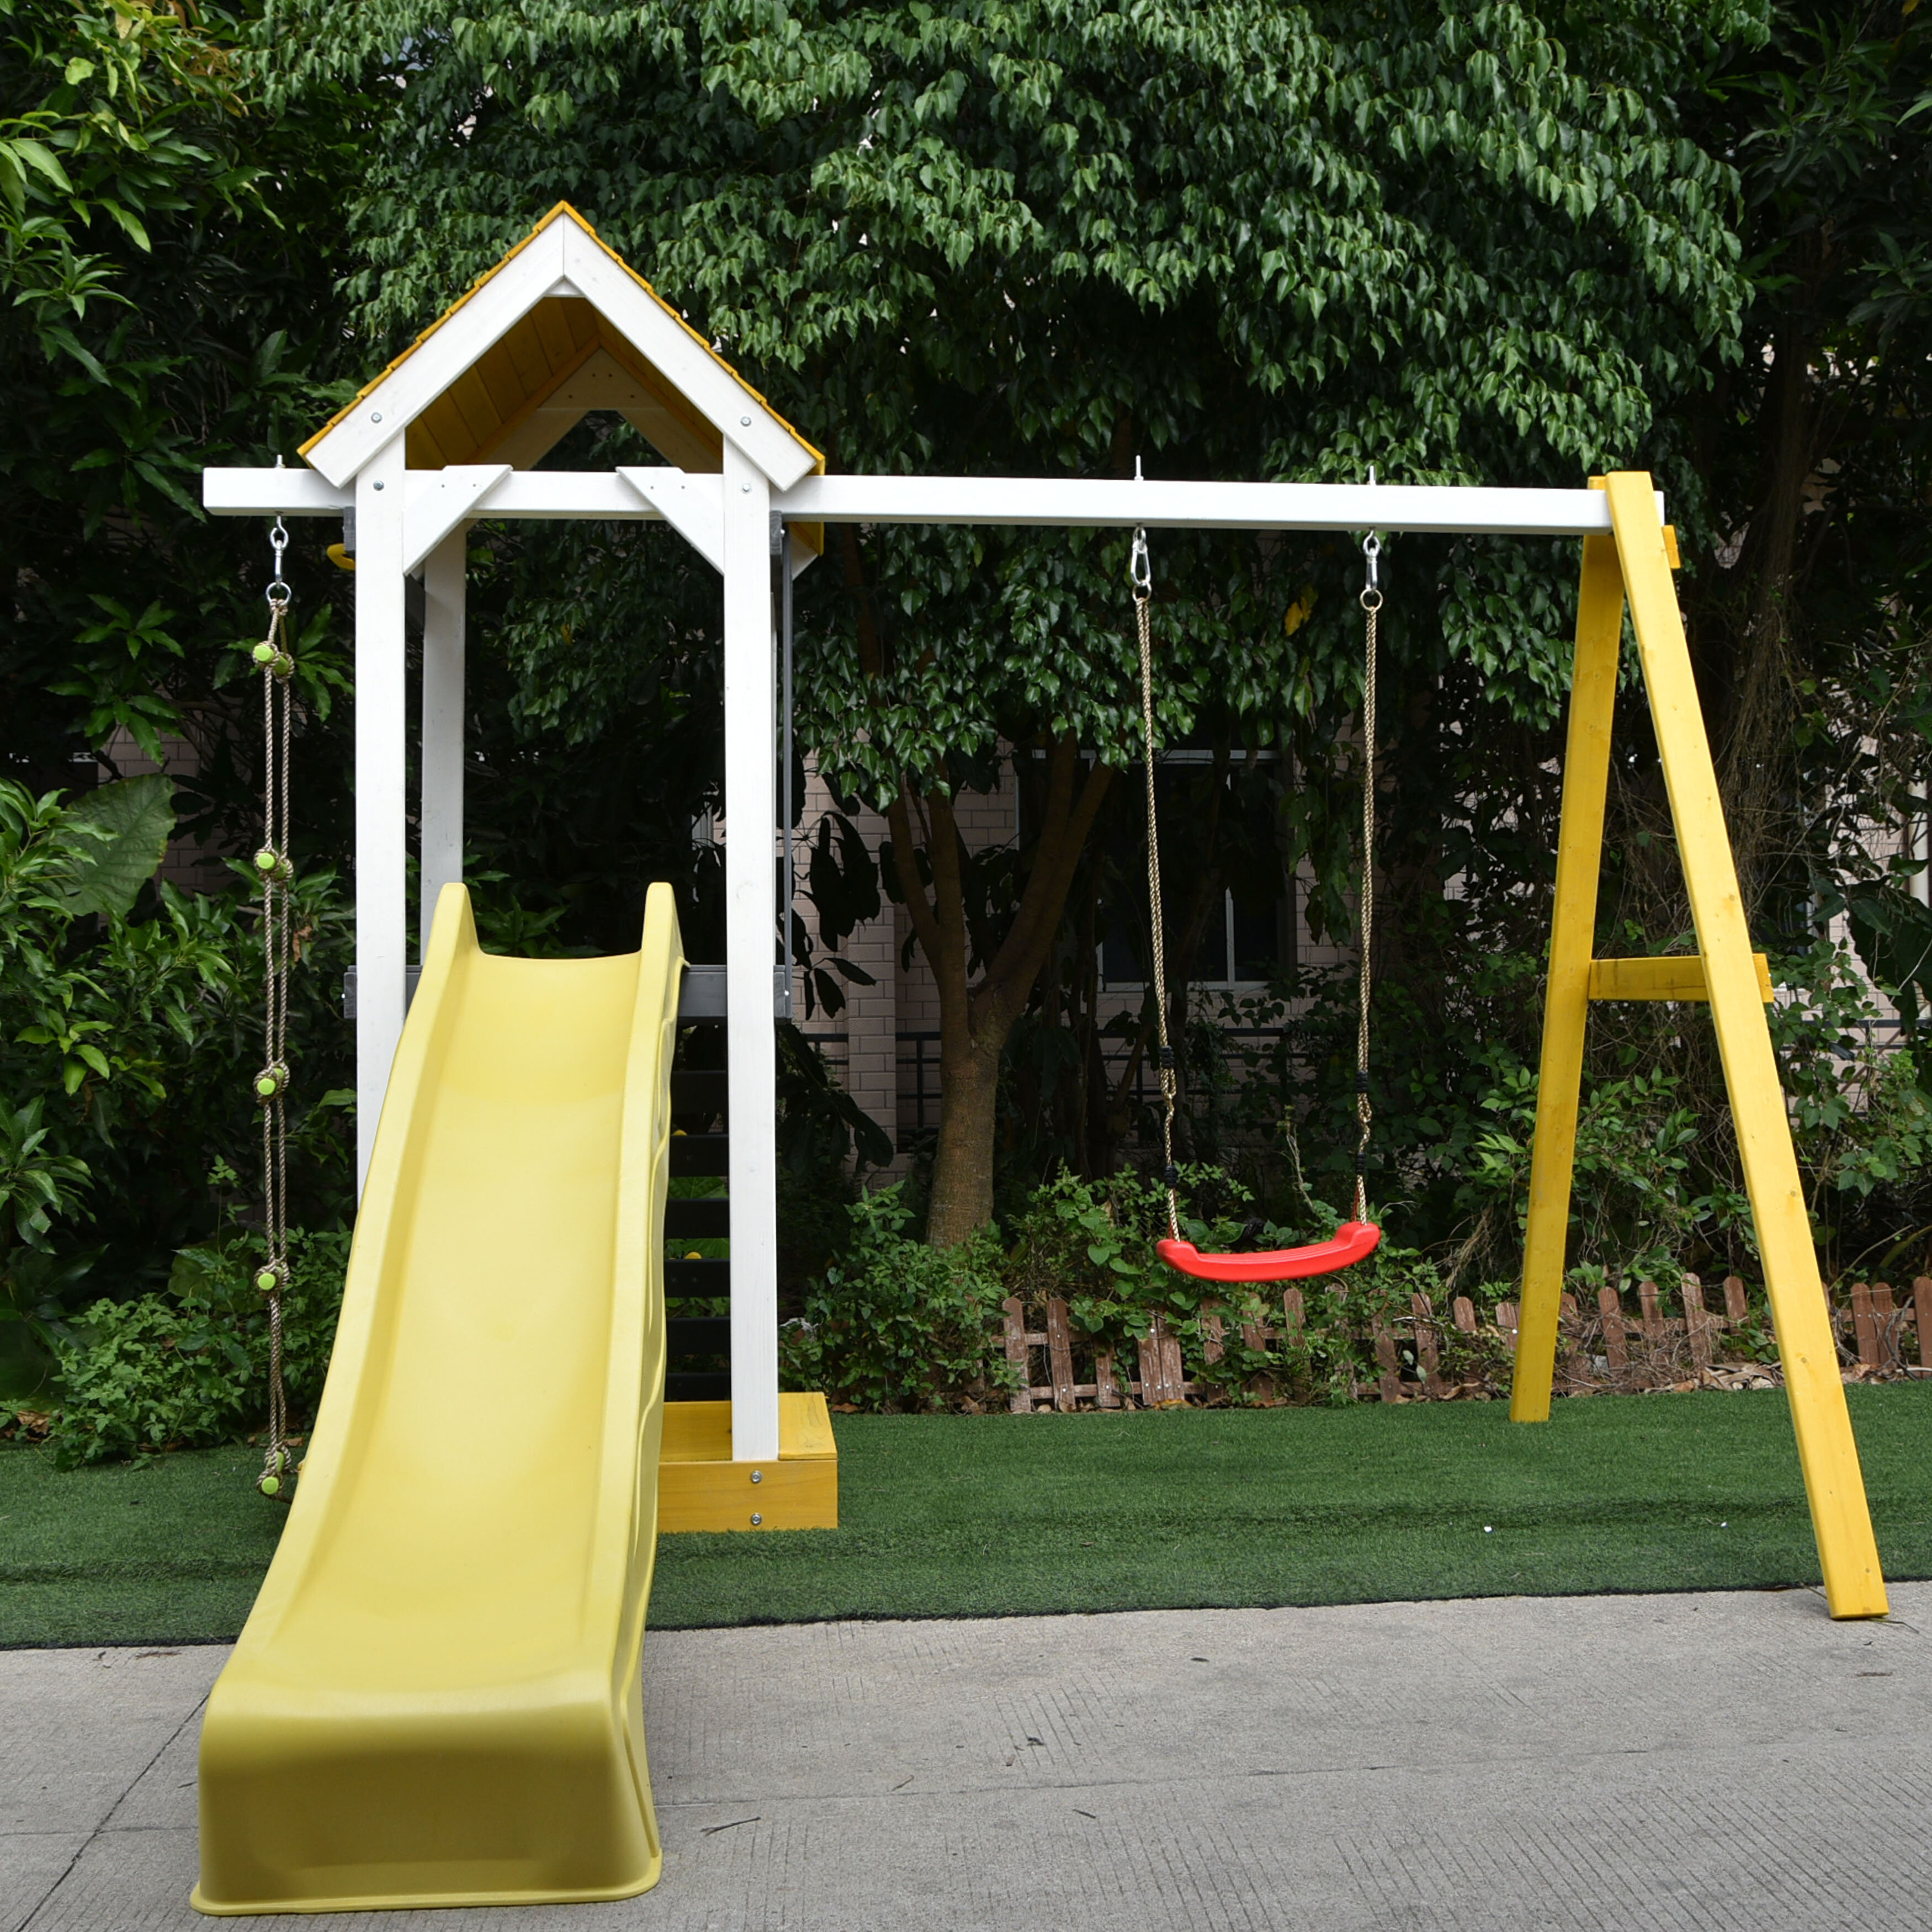 arc Shaped Waterproof Swing，Garden Outdoor Wooden Swing Set for Children Adult Kids Indoor Yard Wooden Swing 